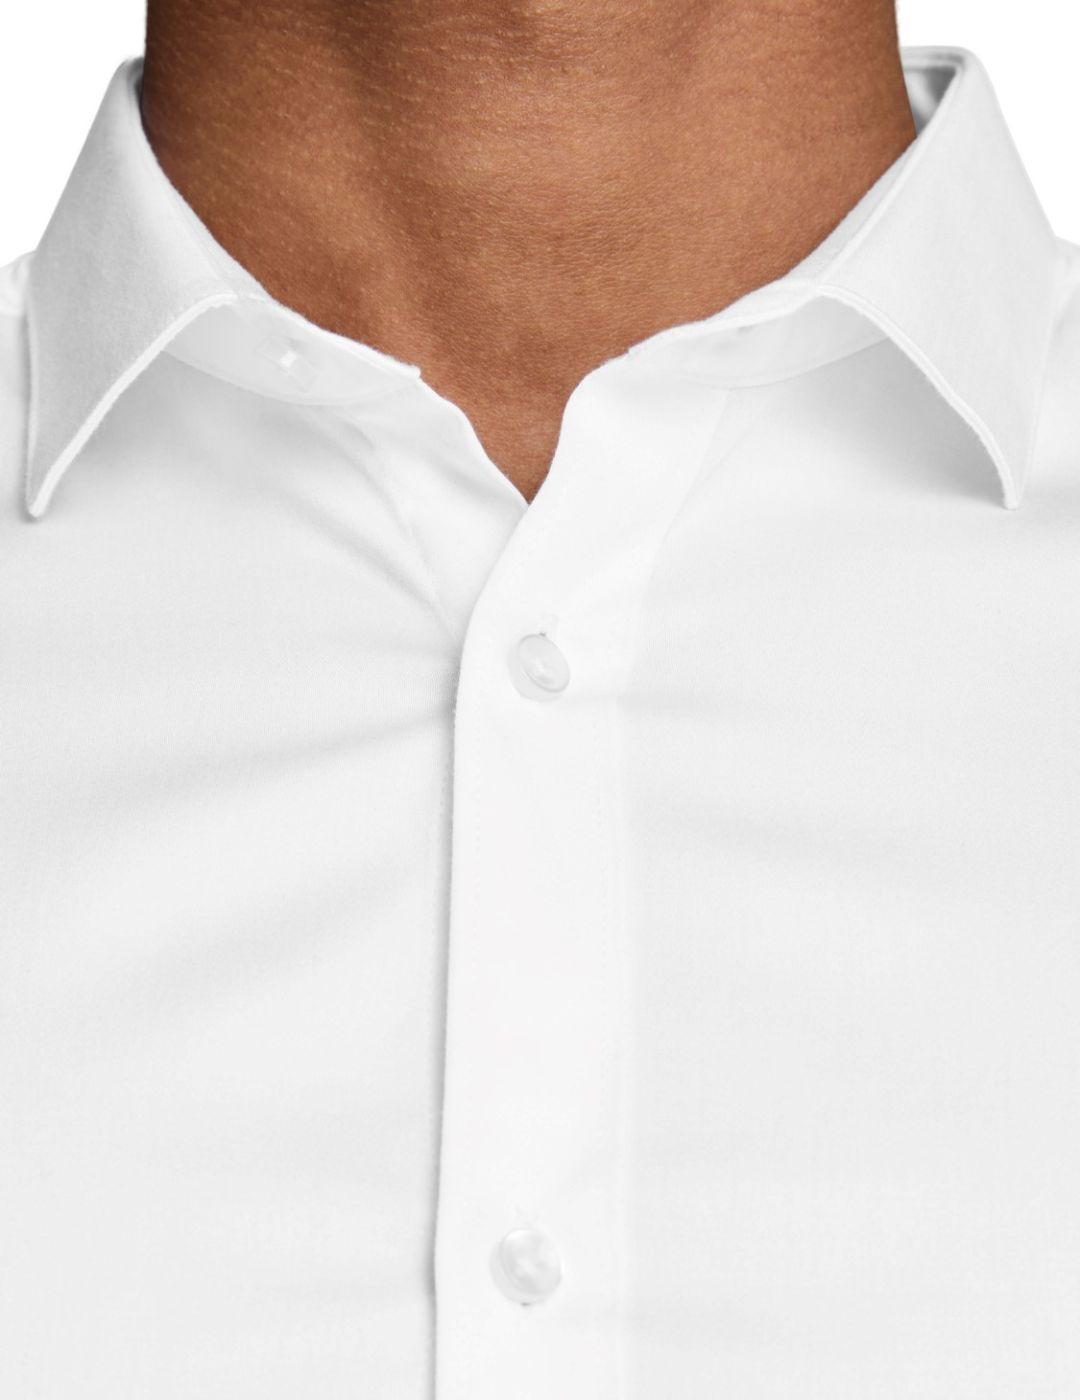 Camisa Jack-Jones Parma Noos blanca para hombre -s